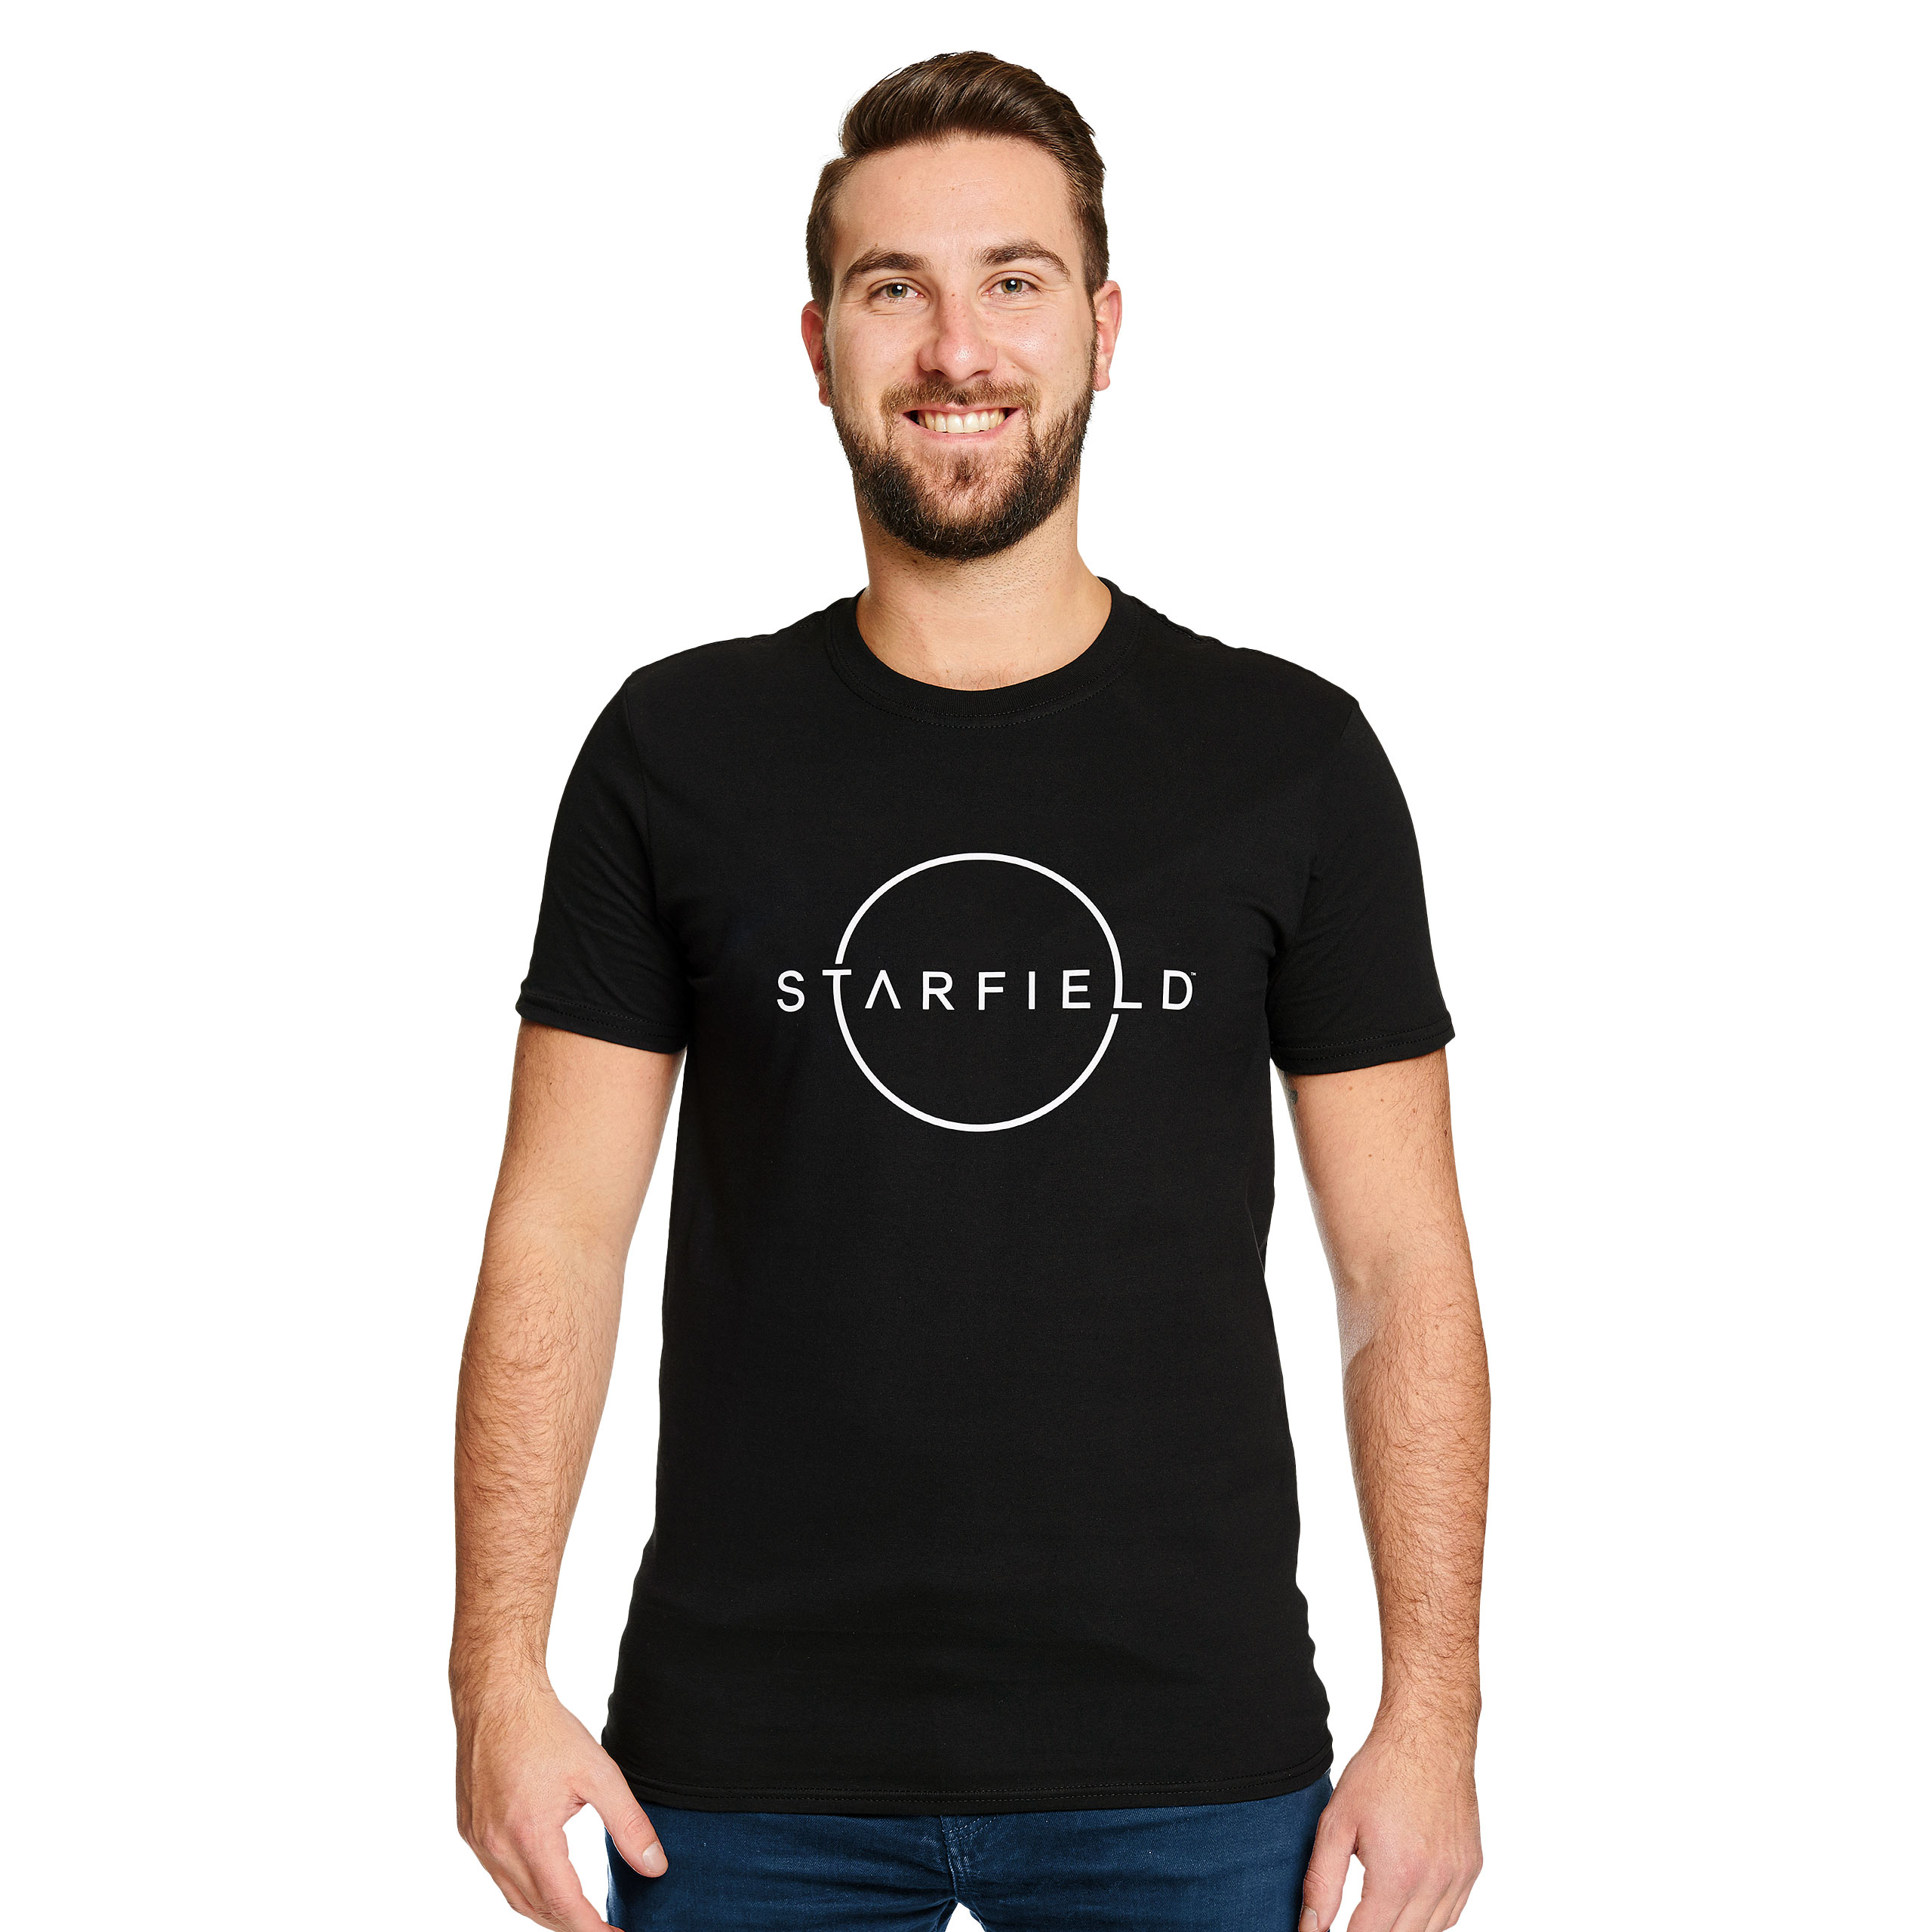 Starfield - T-shirt logo noir